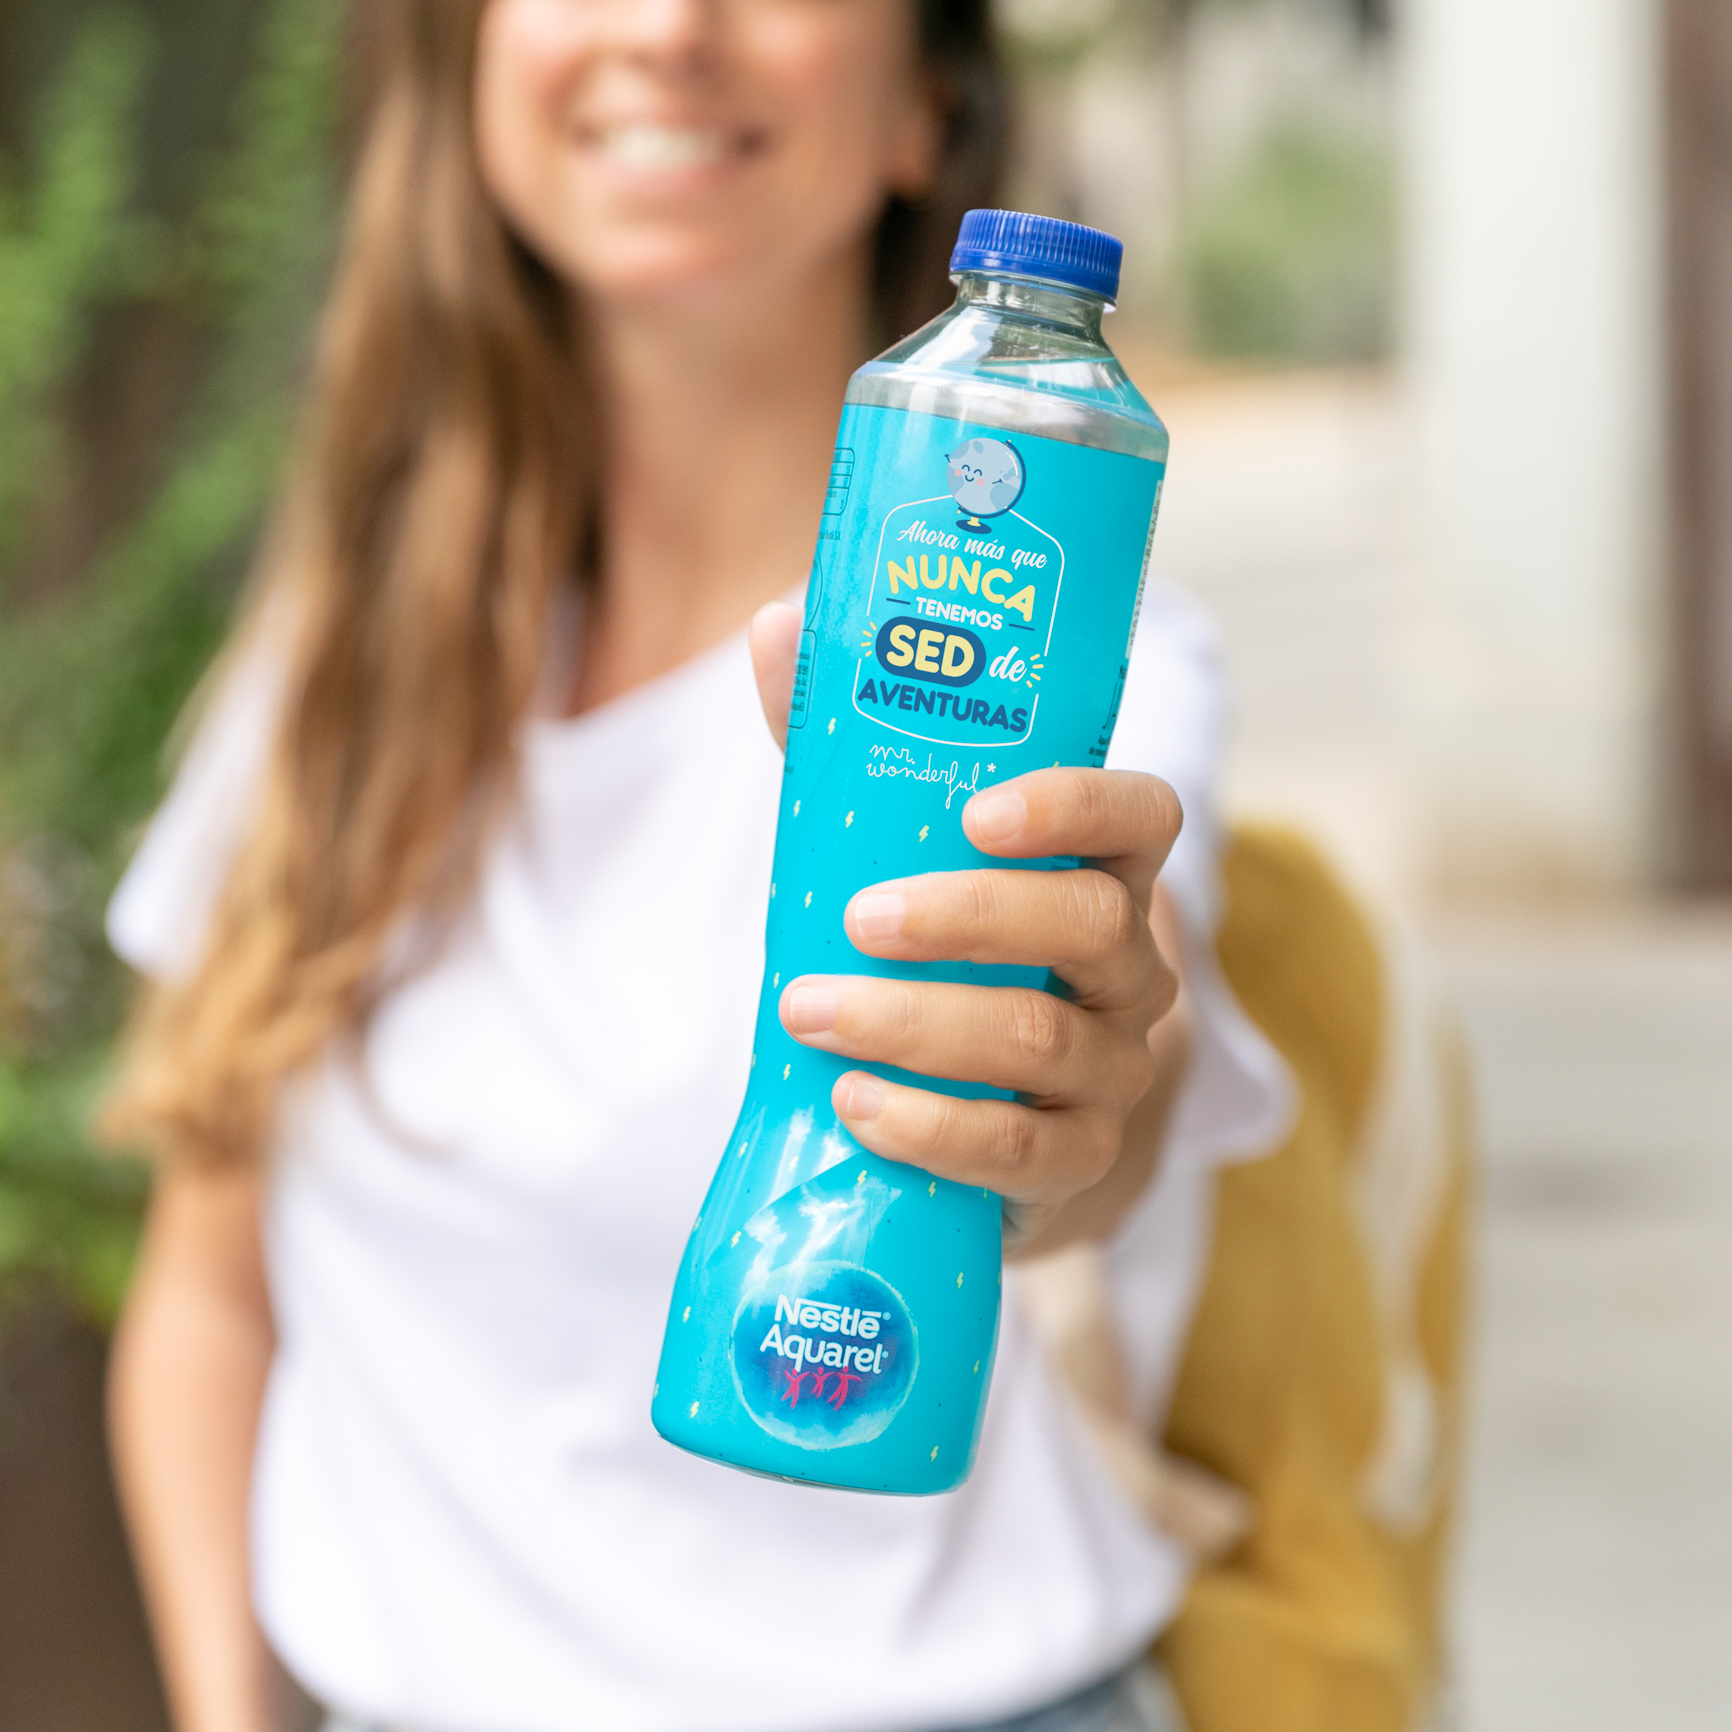 Las botellas de agua Nestlé Aquarel by Mr. Wonderful para hidratarte on the  GO, ¡vuelven con todo su flow! - muymolon